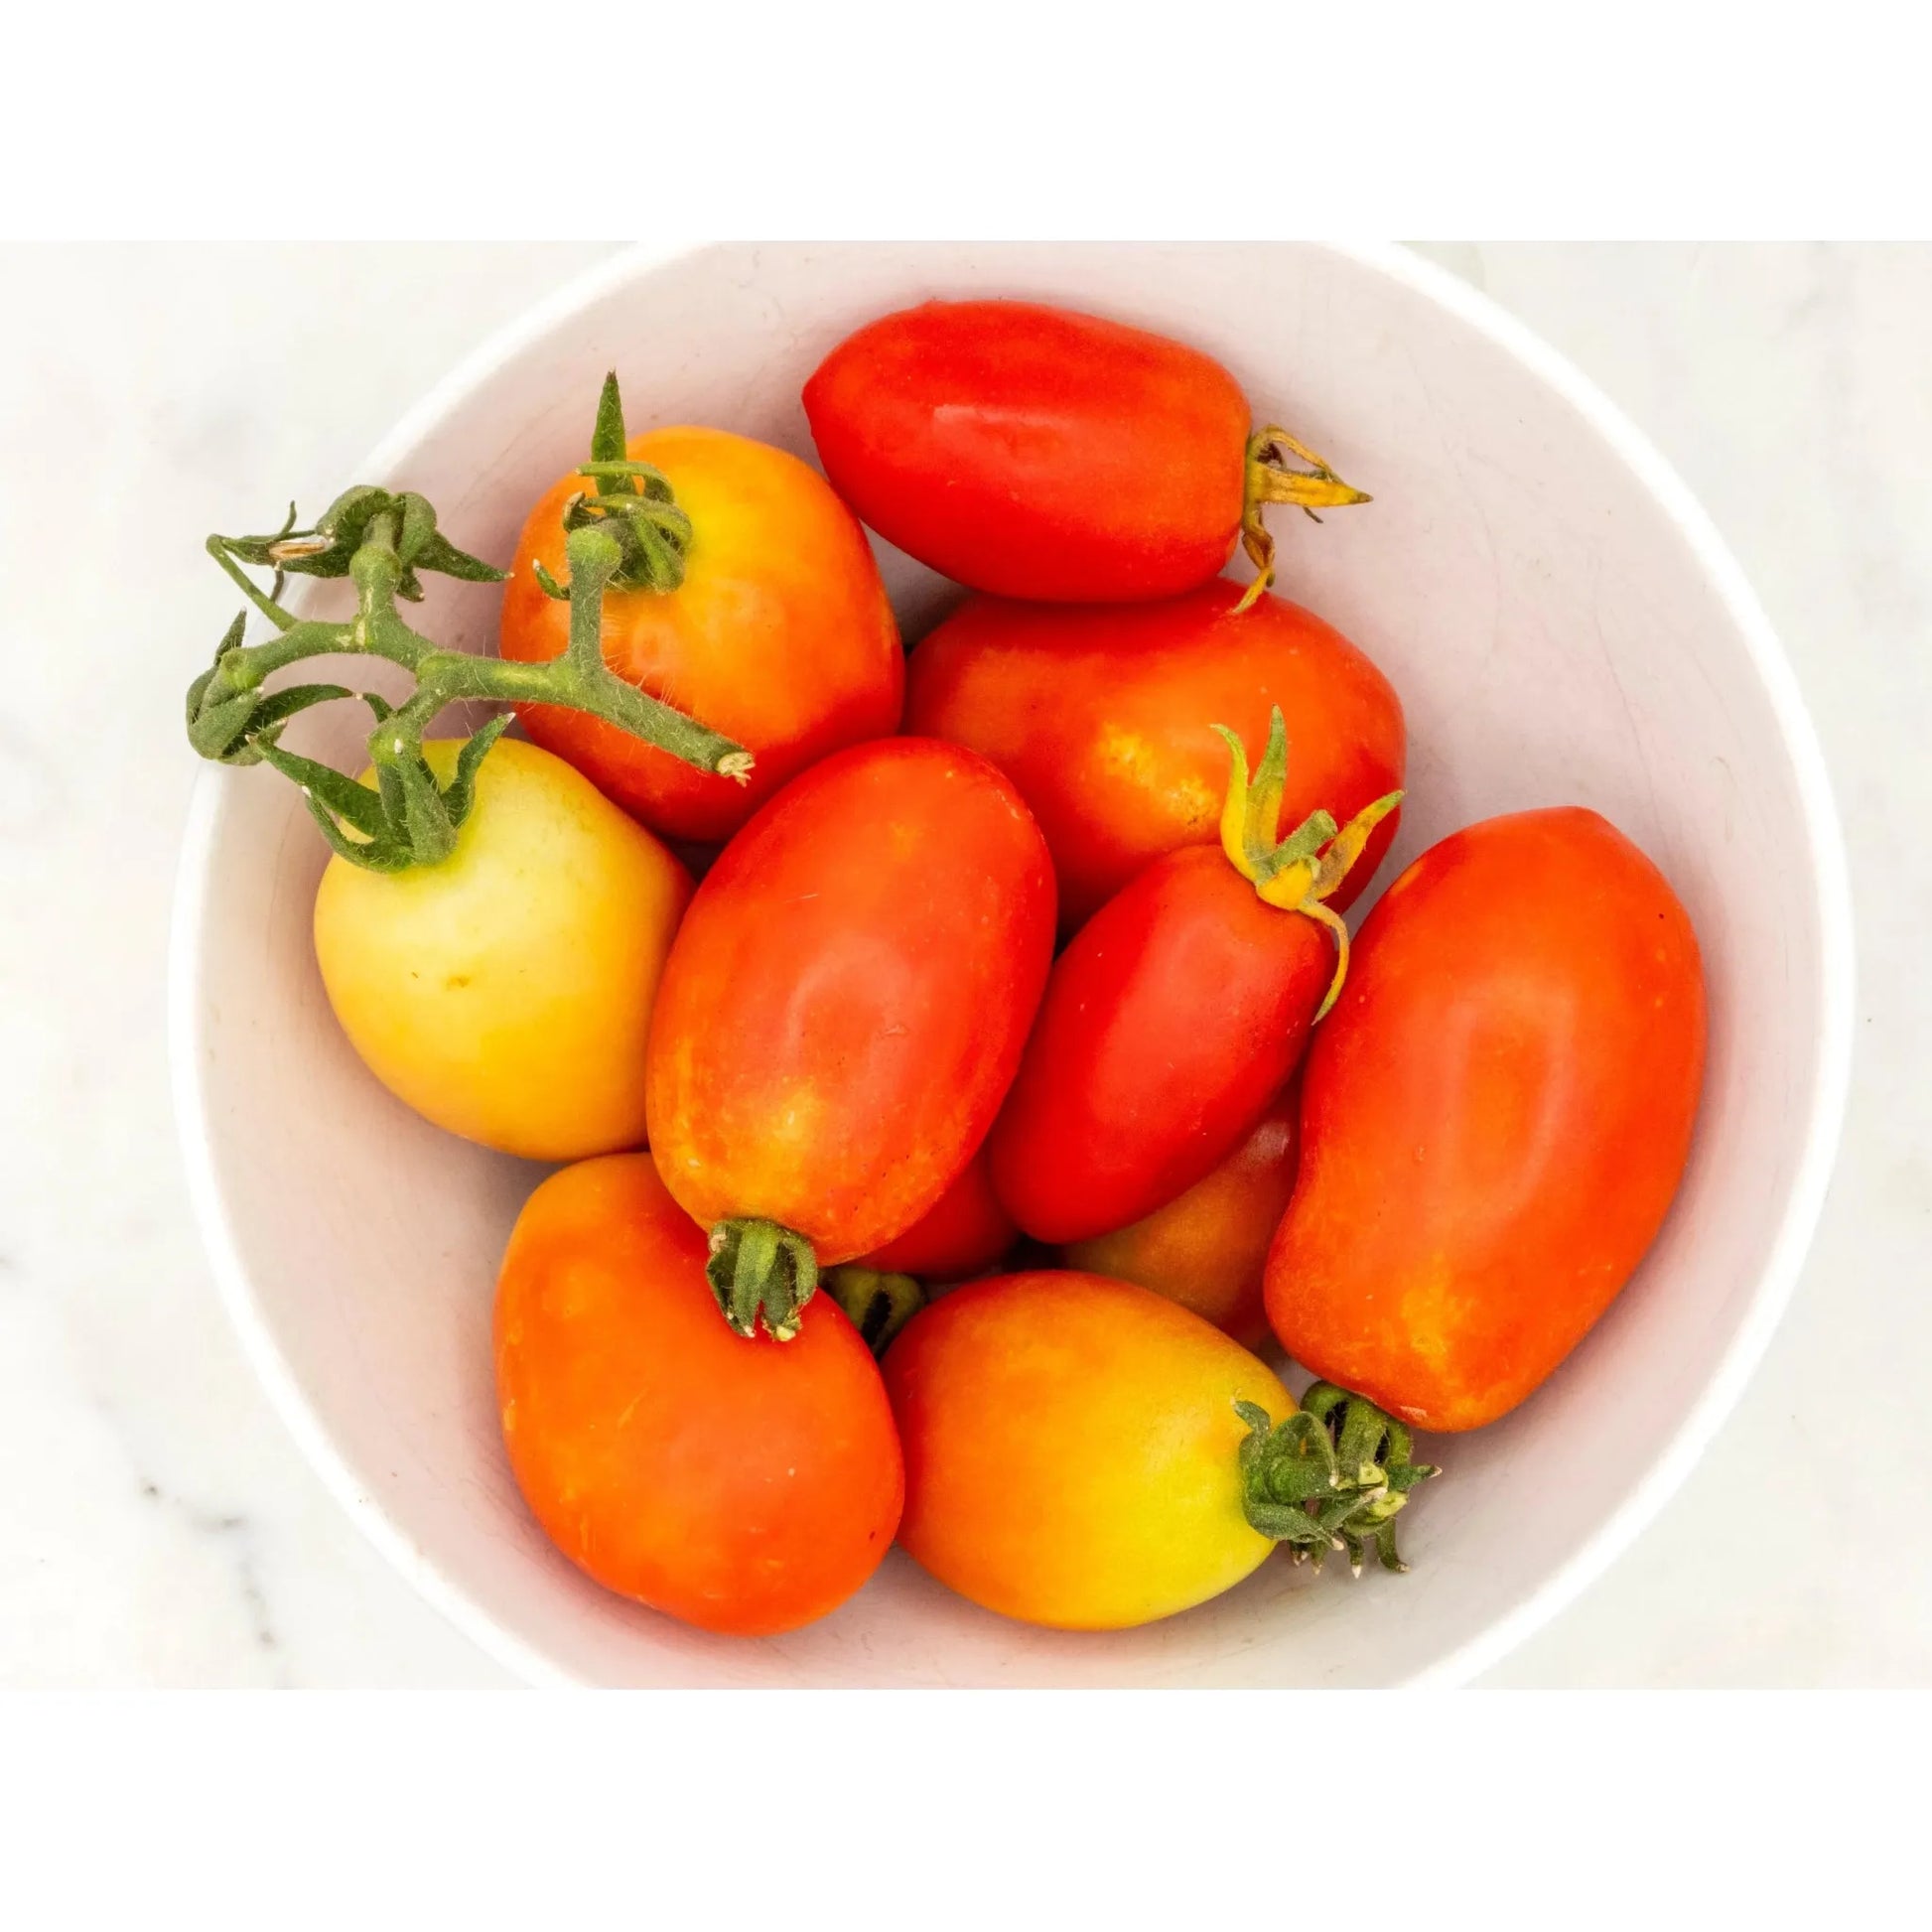 Soil - Grown Tomato Roma - Nutrient Farm